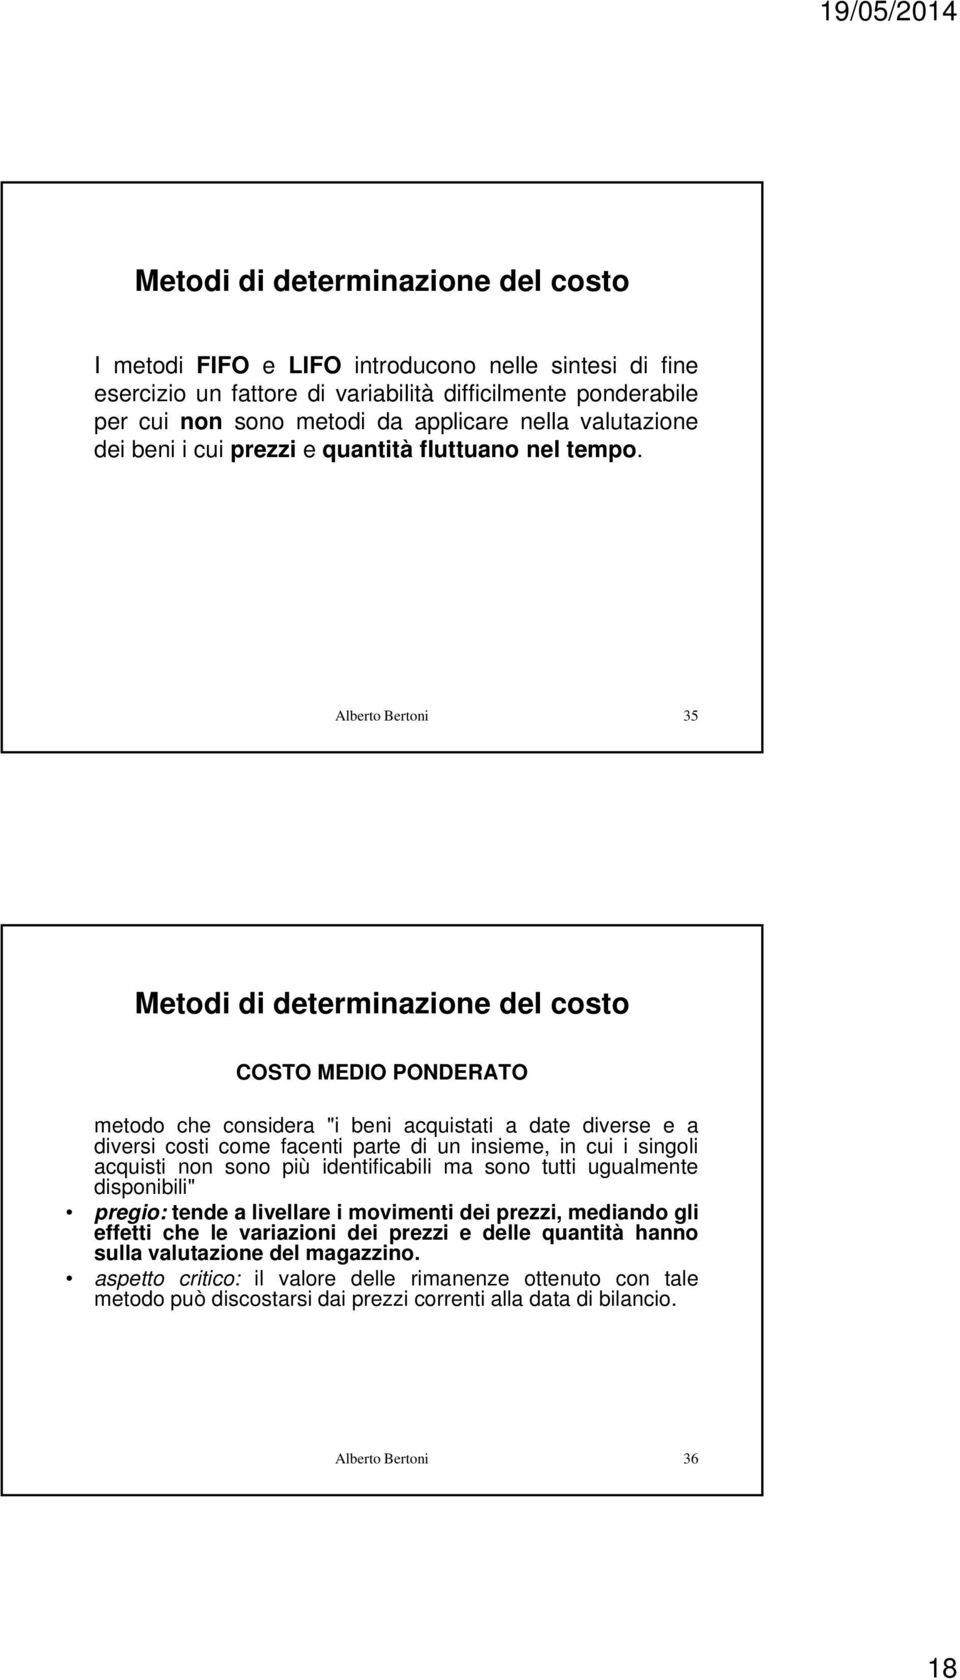 Alberto Bertoni 35 Metodi di determinazione del costo COSTO MEDIO PONDERATO metodo che considera "i beni acquistati a date diverse e a diversi costi come facenti parte di un insieme, in cui i singoli